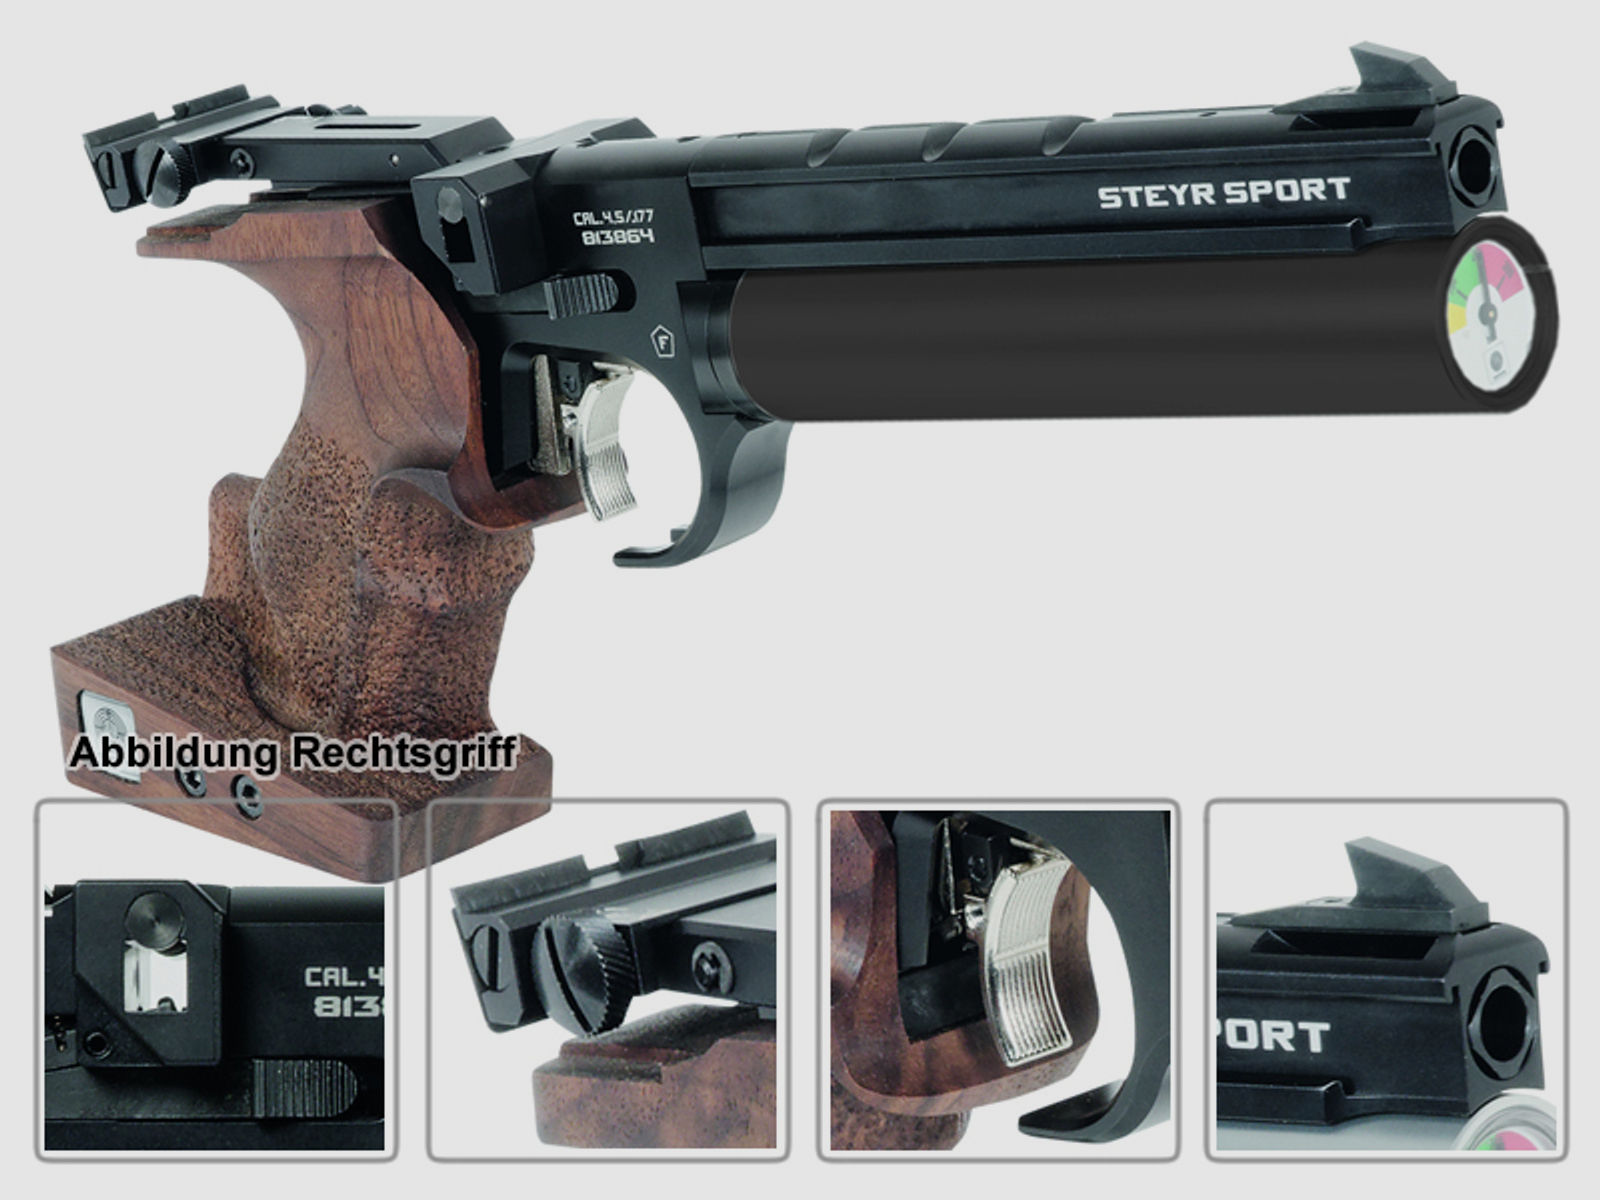 Match Pressluftpistole STEYR LP50 RF COMPACT, 5er Magazin, schwarze Kartusche, Linksgriff (P18)